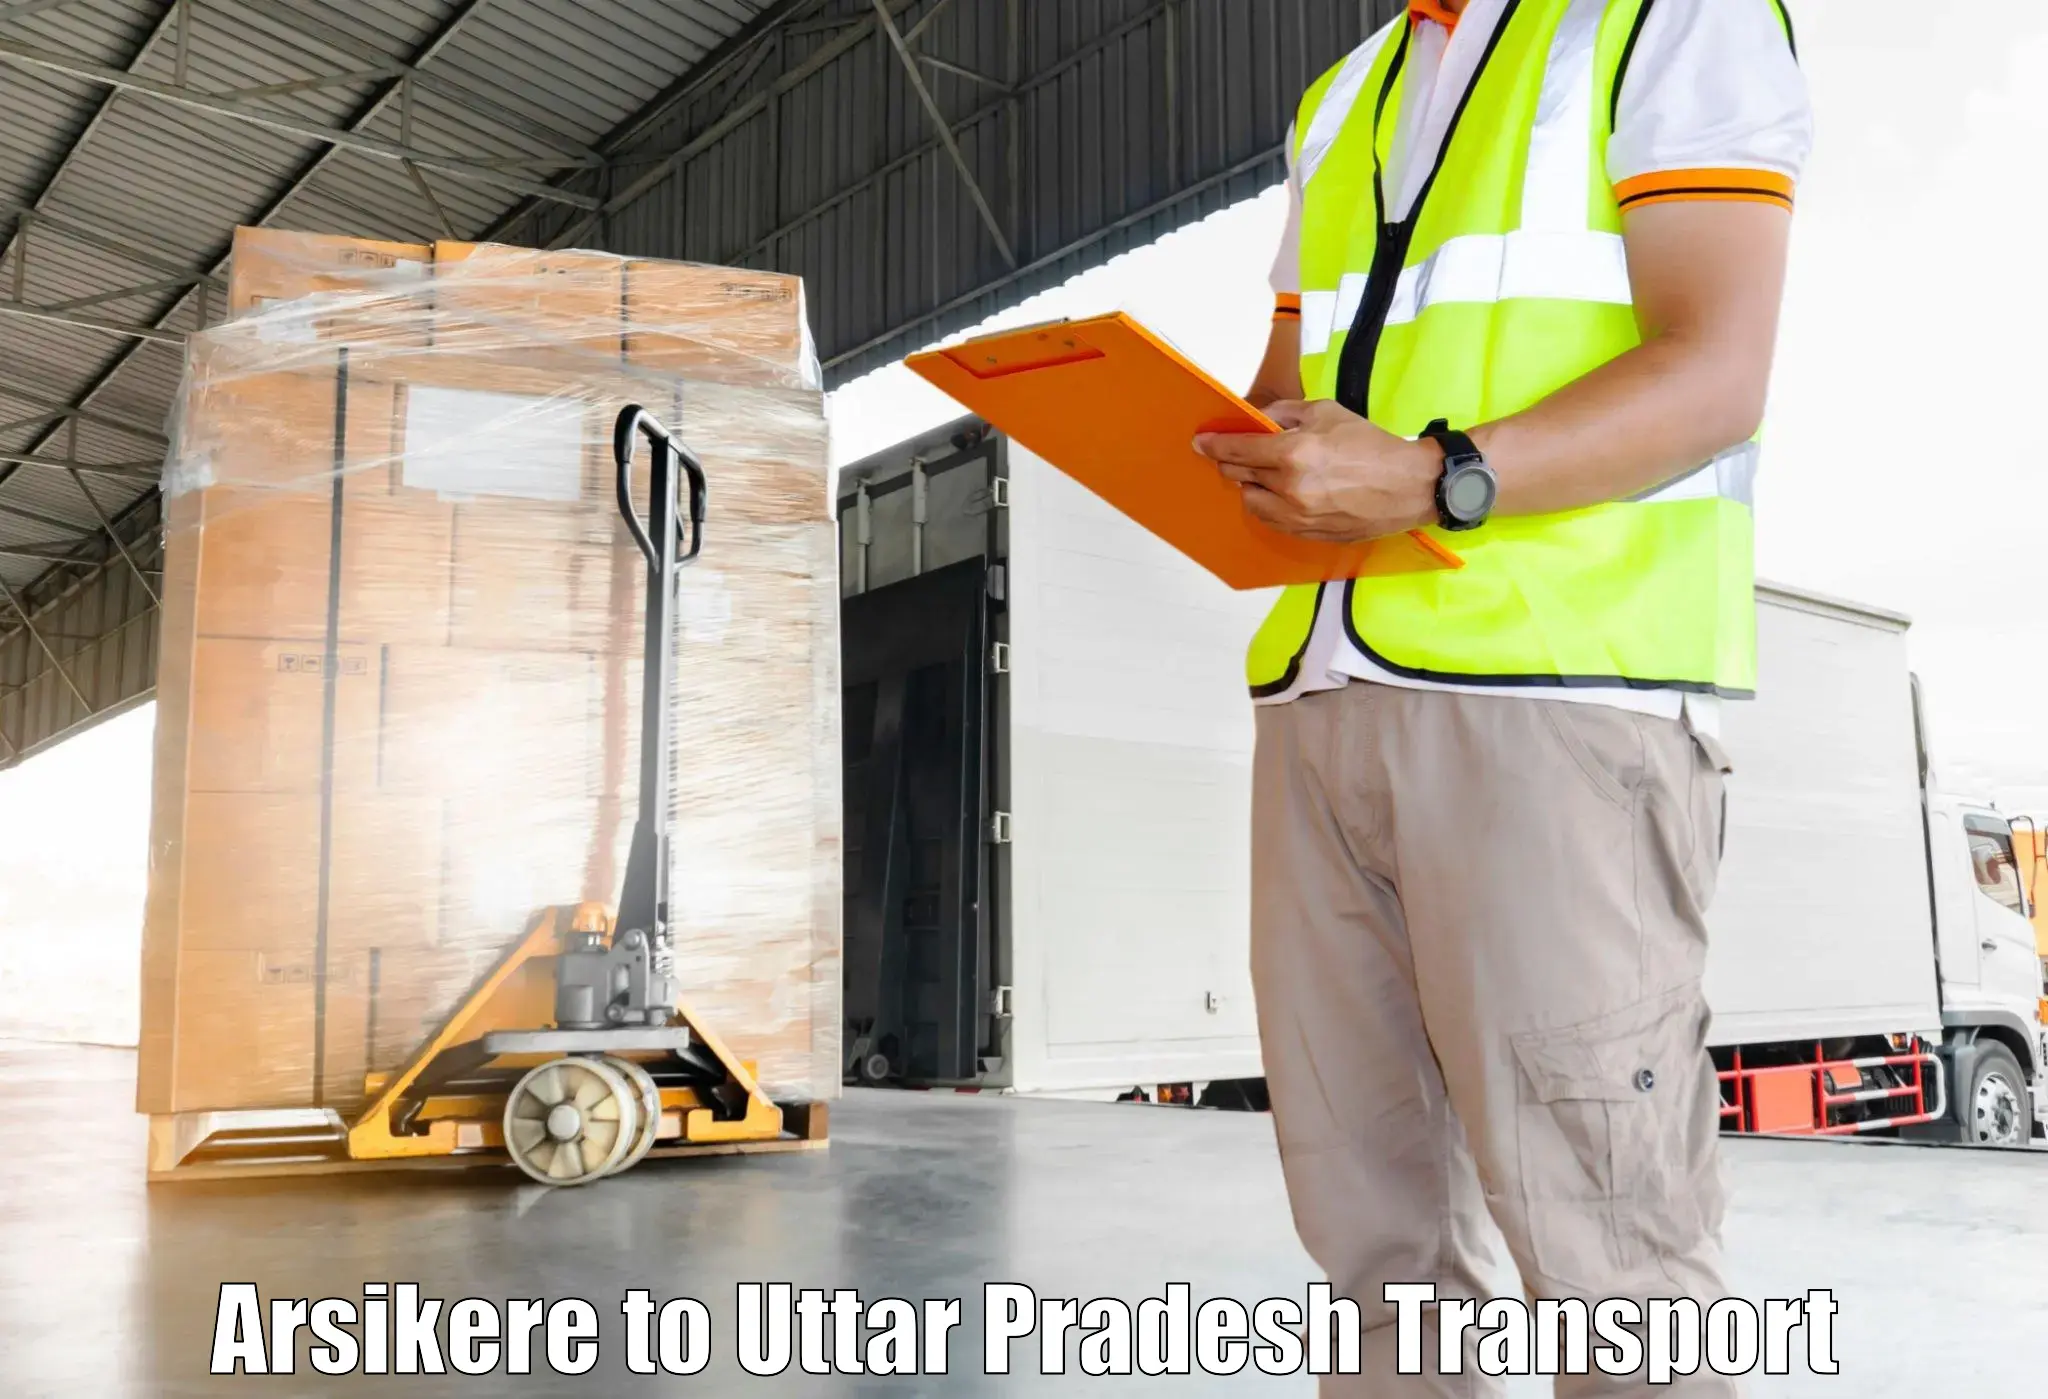 Transportation services Arsikere to Uttar Pradesh